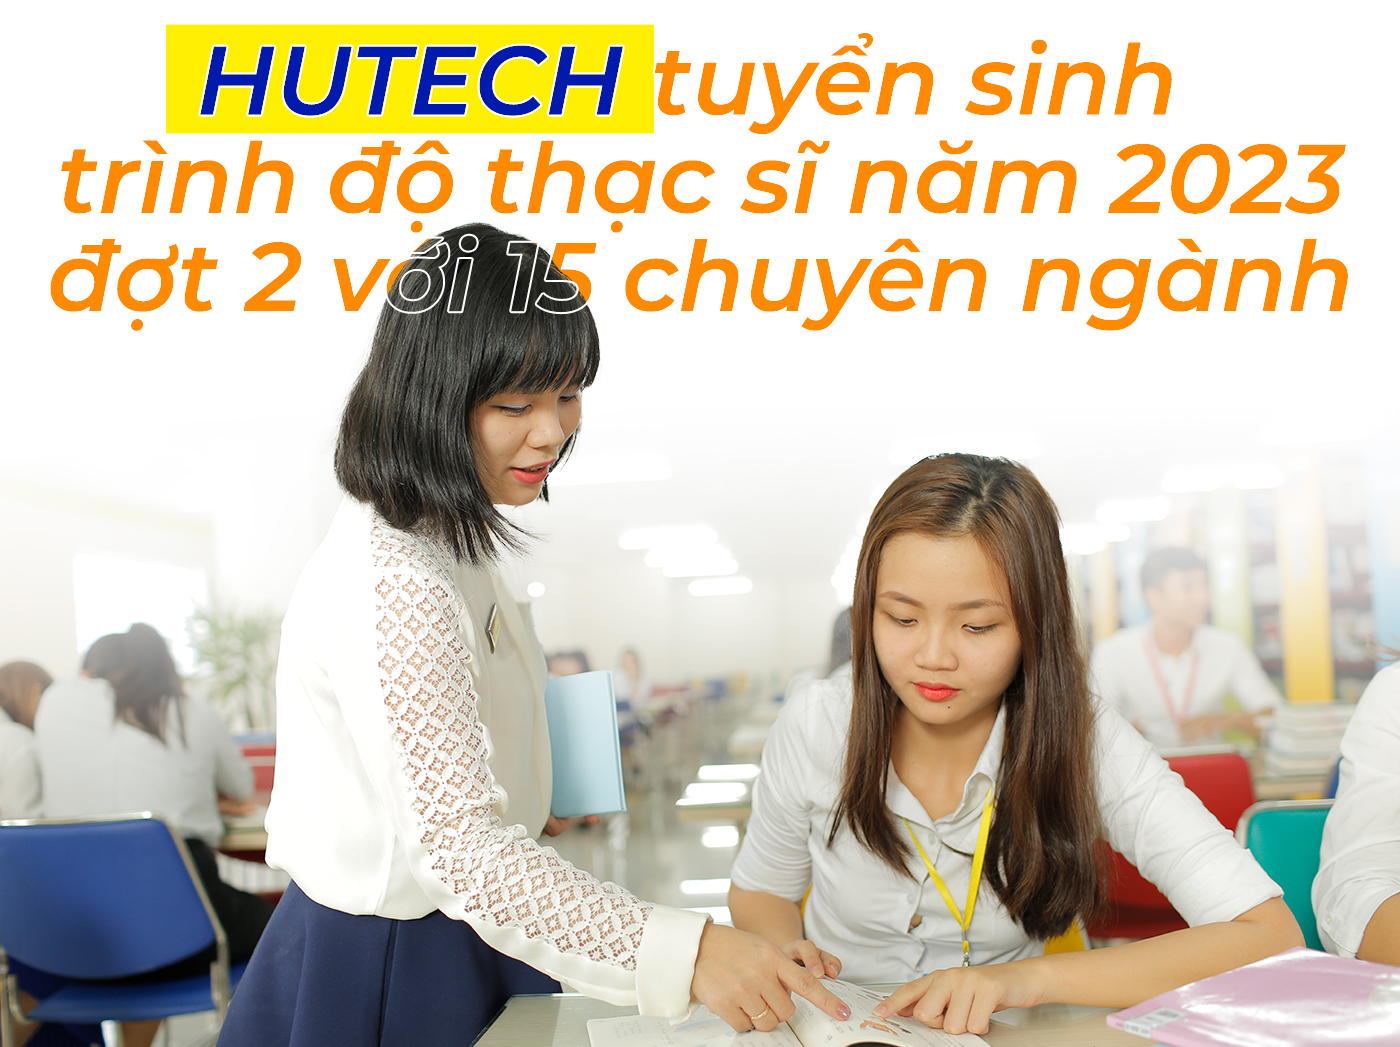 HUTECH tuyển sinh trình độ thạc sĩ năm 2023 đợt 2 với 15 chuyên ngành - ảnh 1